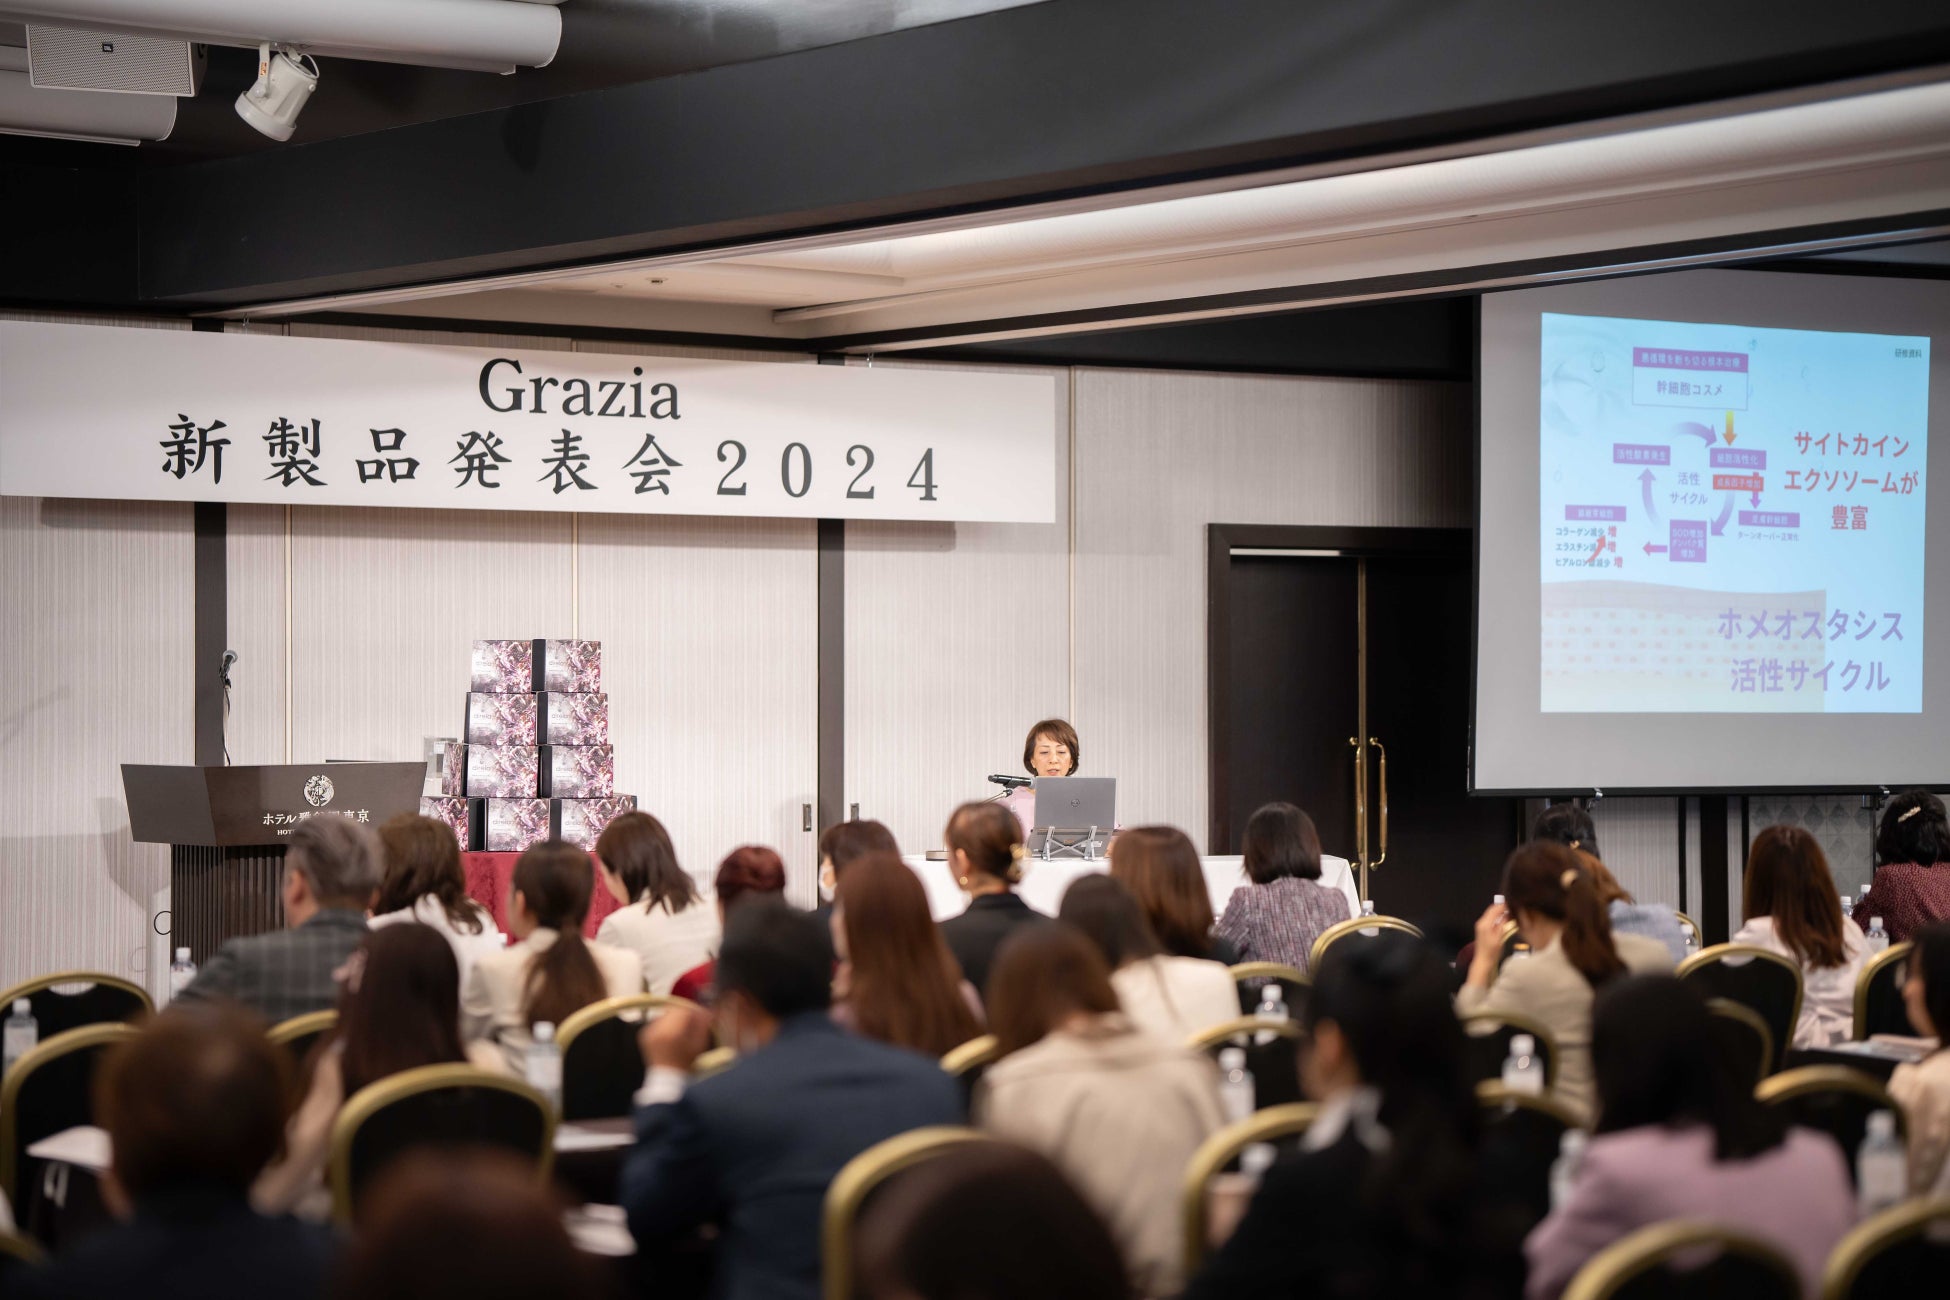 ヒト幹細胞コスメのパイオニアから美容業界初となる新製品を発表４月８日に《ホテル雅叙園東京》にて「ディレイア新製品発表会＆サンクスパーティー」を開催しました